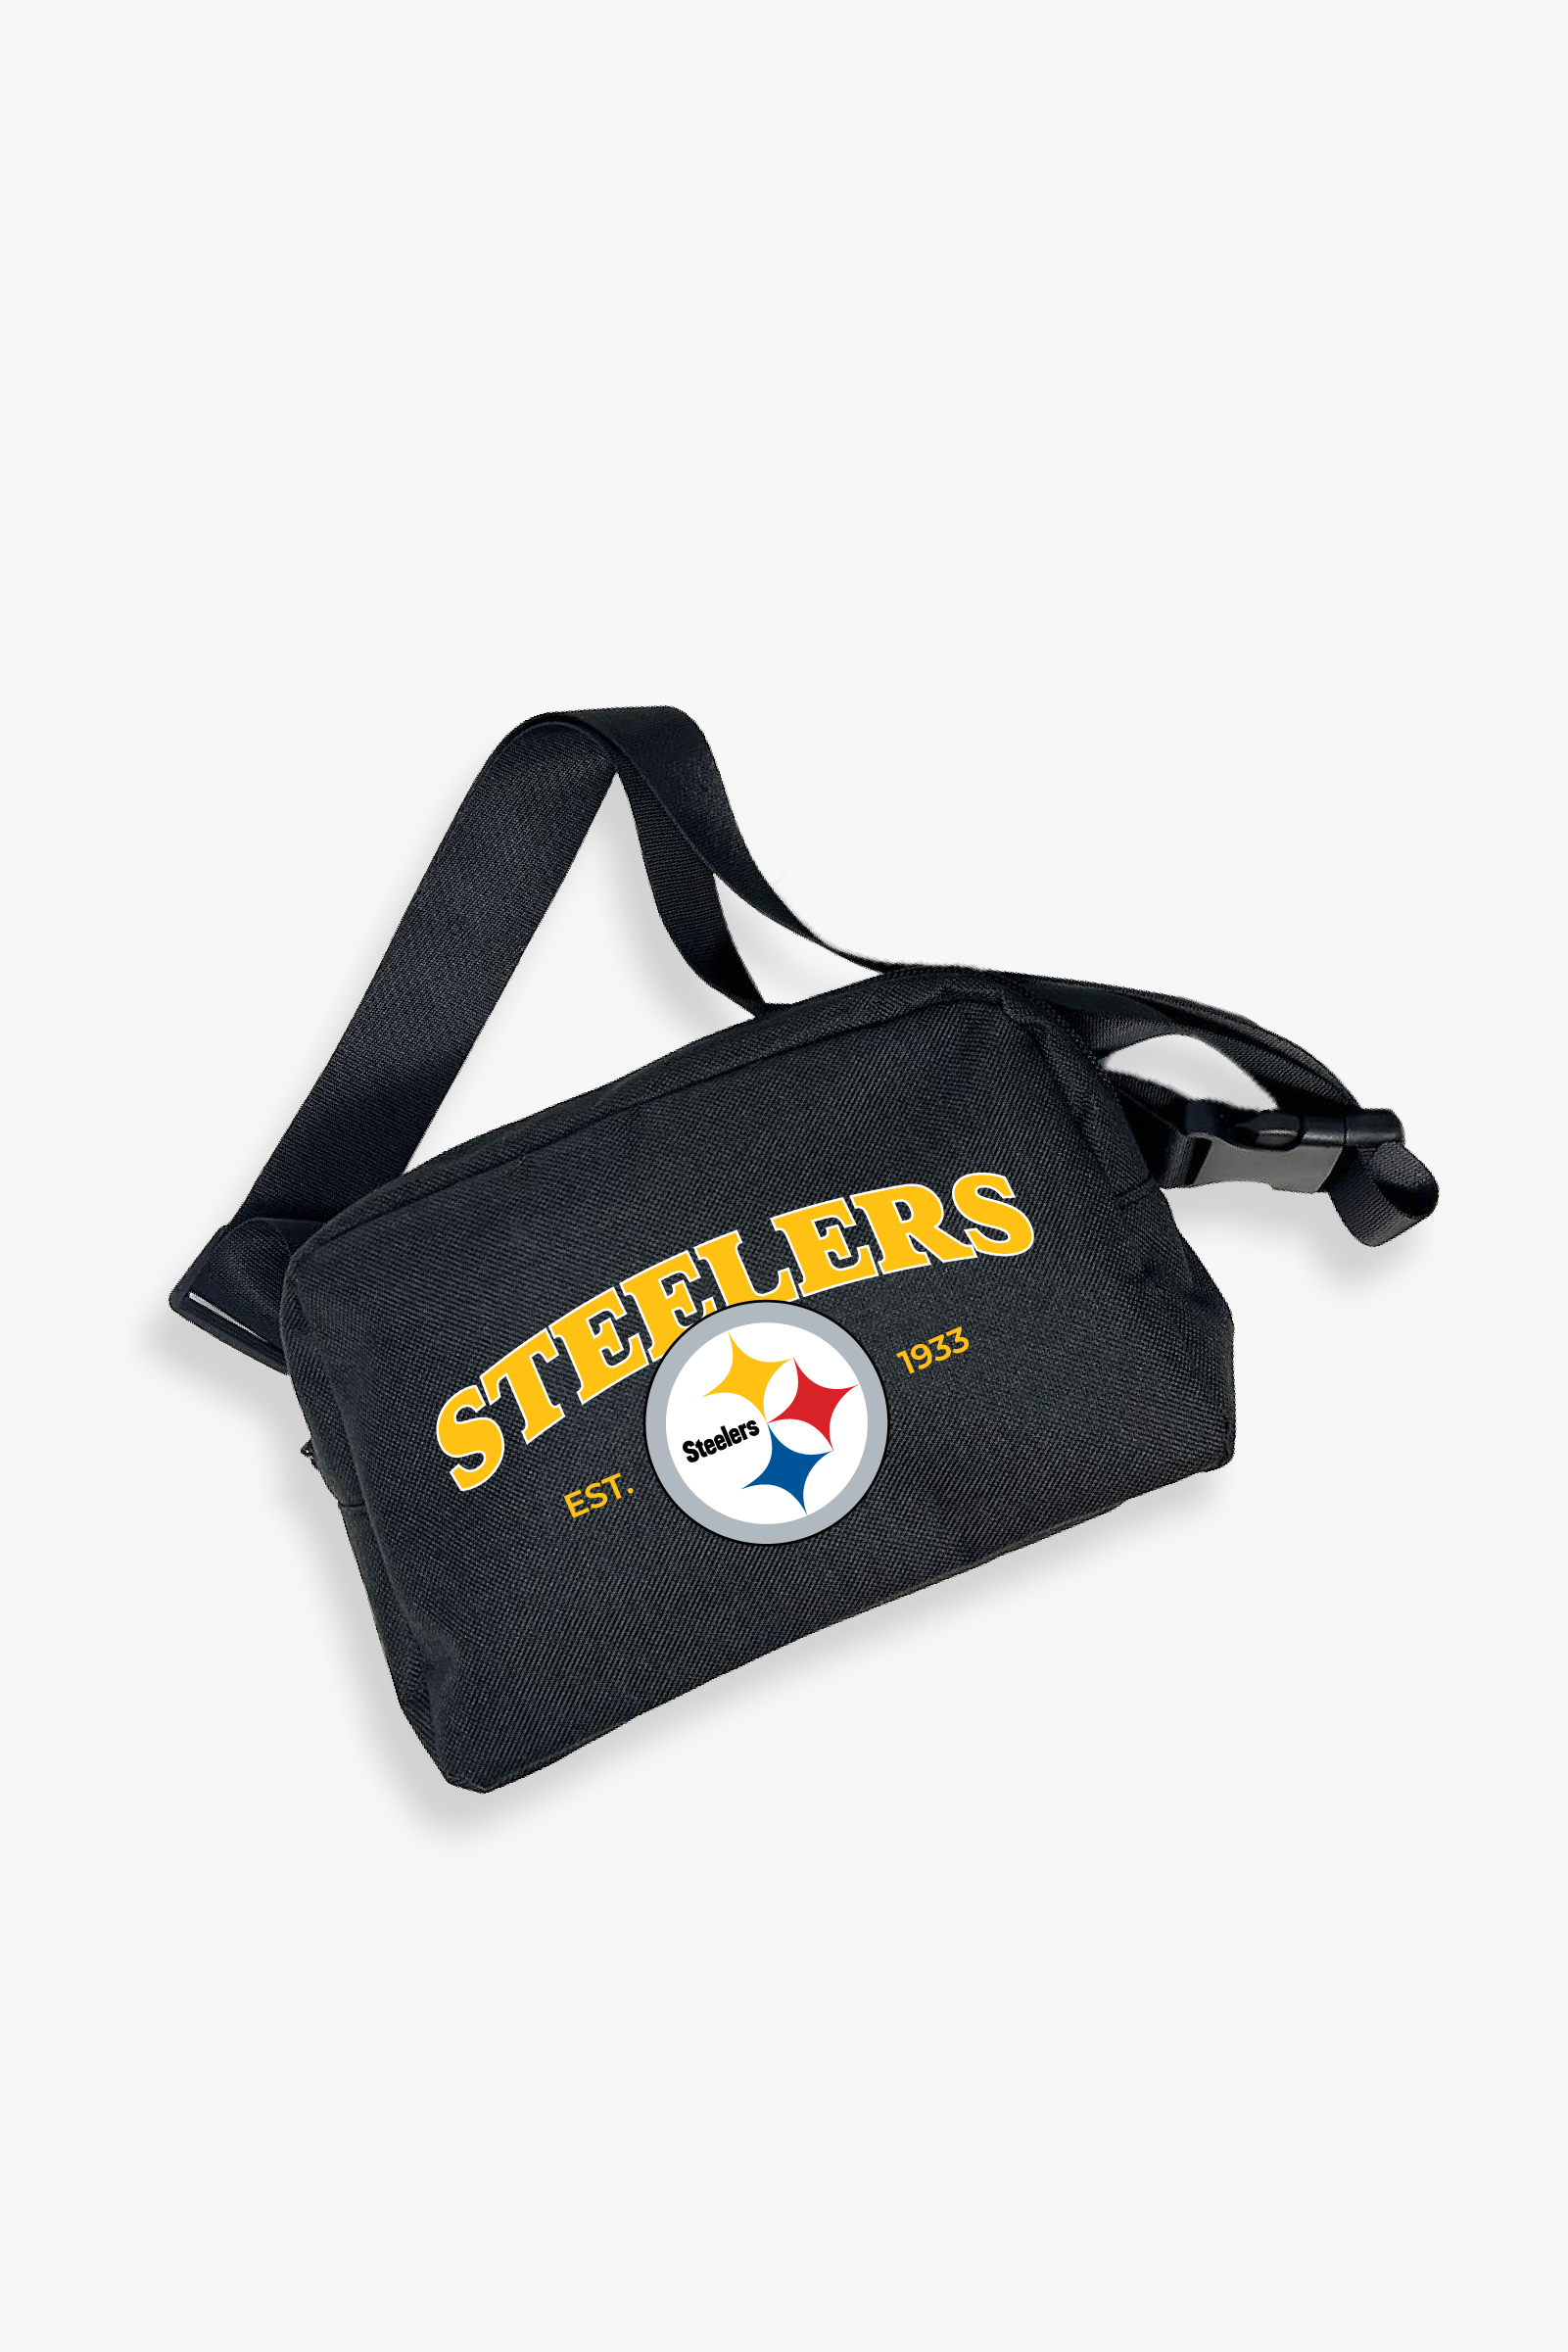 Gertex NFL Pittsburgh Steelers Belt Bag